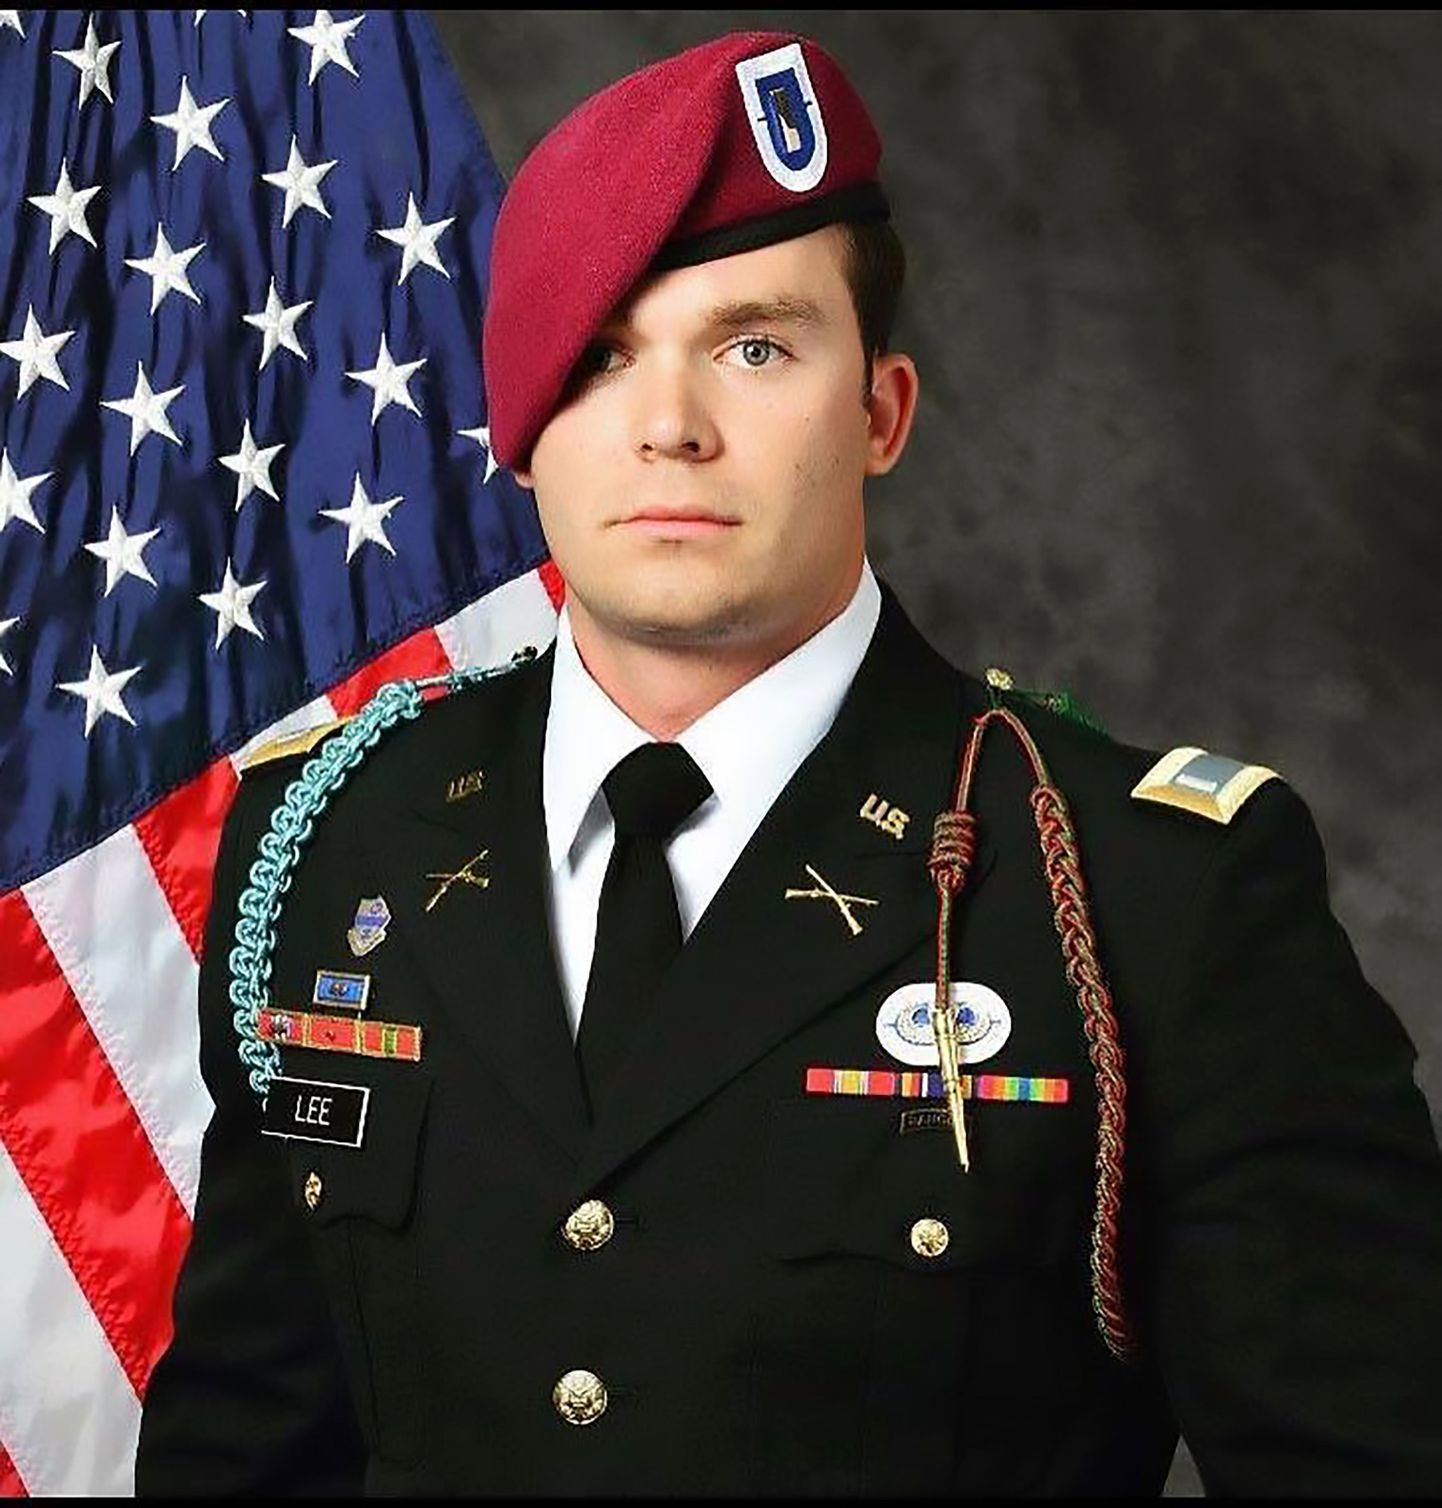 Iraagis hukkunud USA sõjaväelane Weston C. Lee.